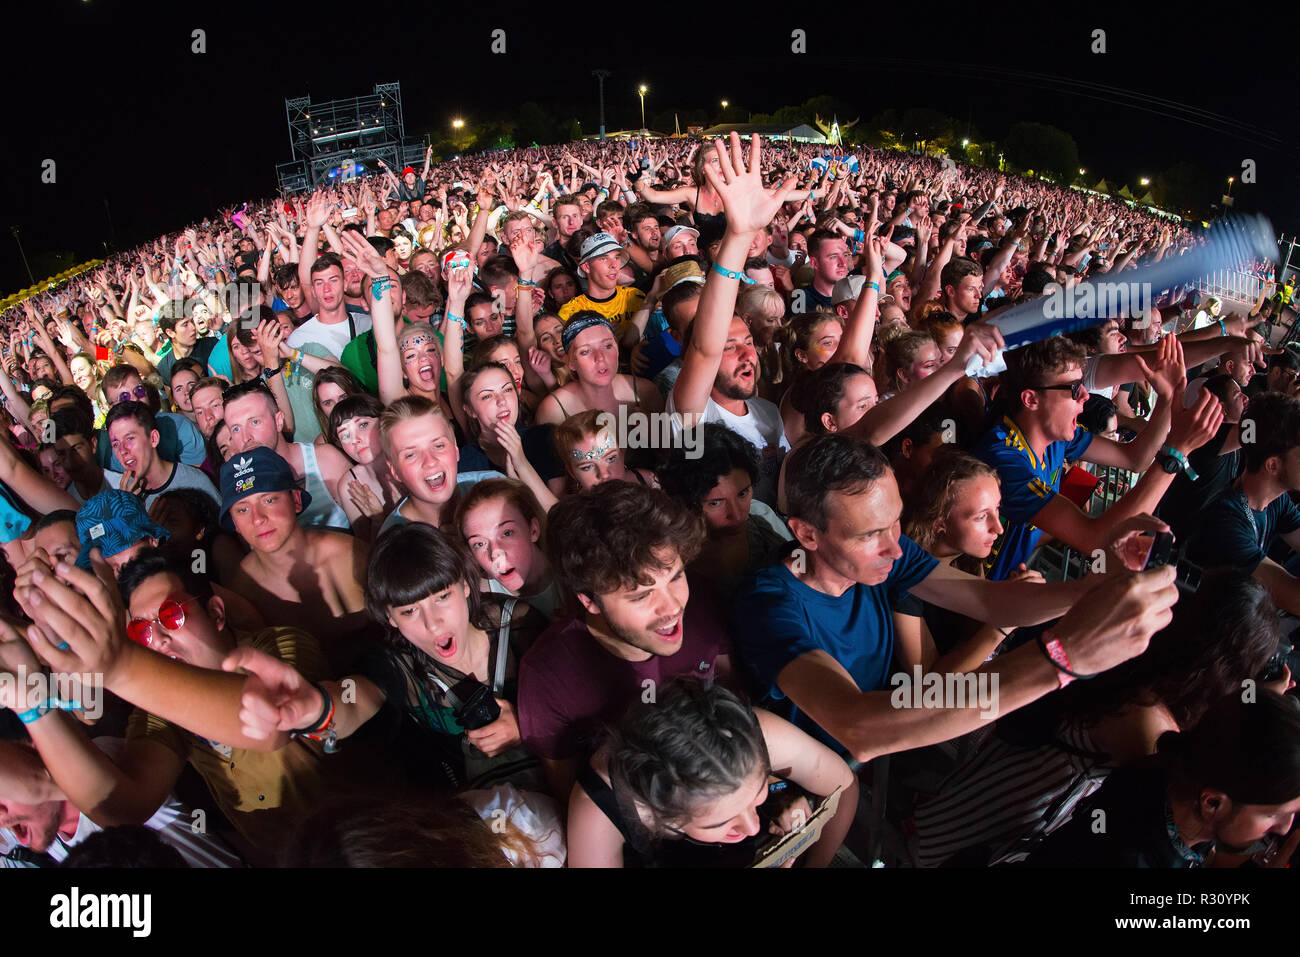 BENICASSIM, ESPAGNE - JUL 22 : La foule lors d'un concert au Festival de Musique le 22 juillet 2018 à Benicassim, Espagne. Banque D'Images